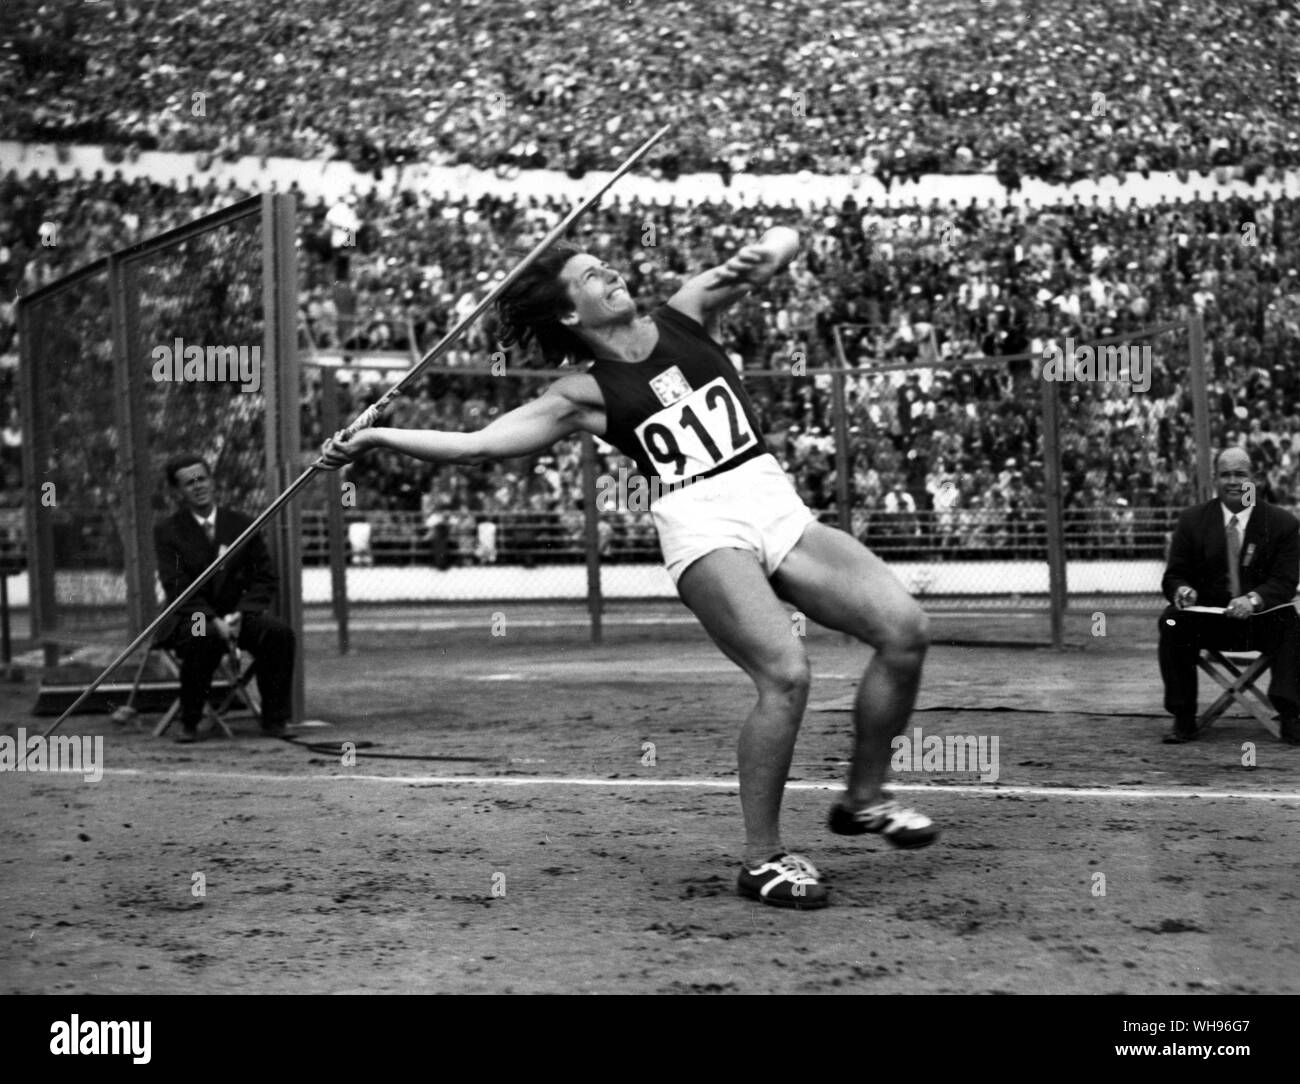 Finnland, Helsinki/Olympics, 1952: Dana Zatopkova (Tschechoslowakei), Sieger im Speerwerfen der Frauen. Sie ist Emil Zatopeks' Frau. Stockfoto